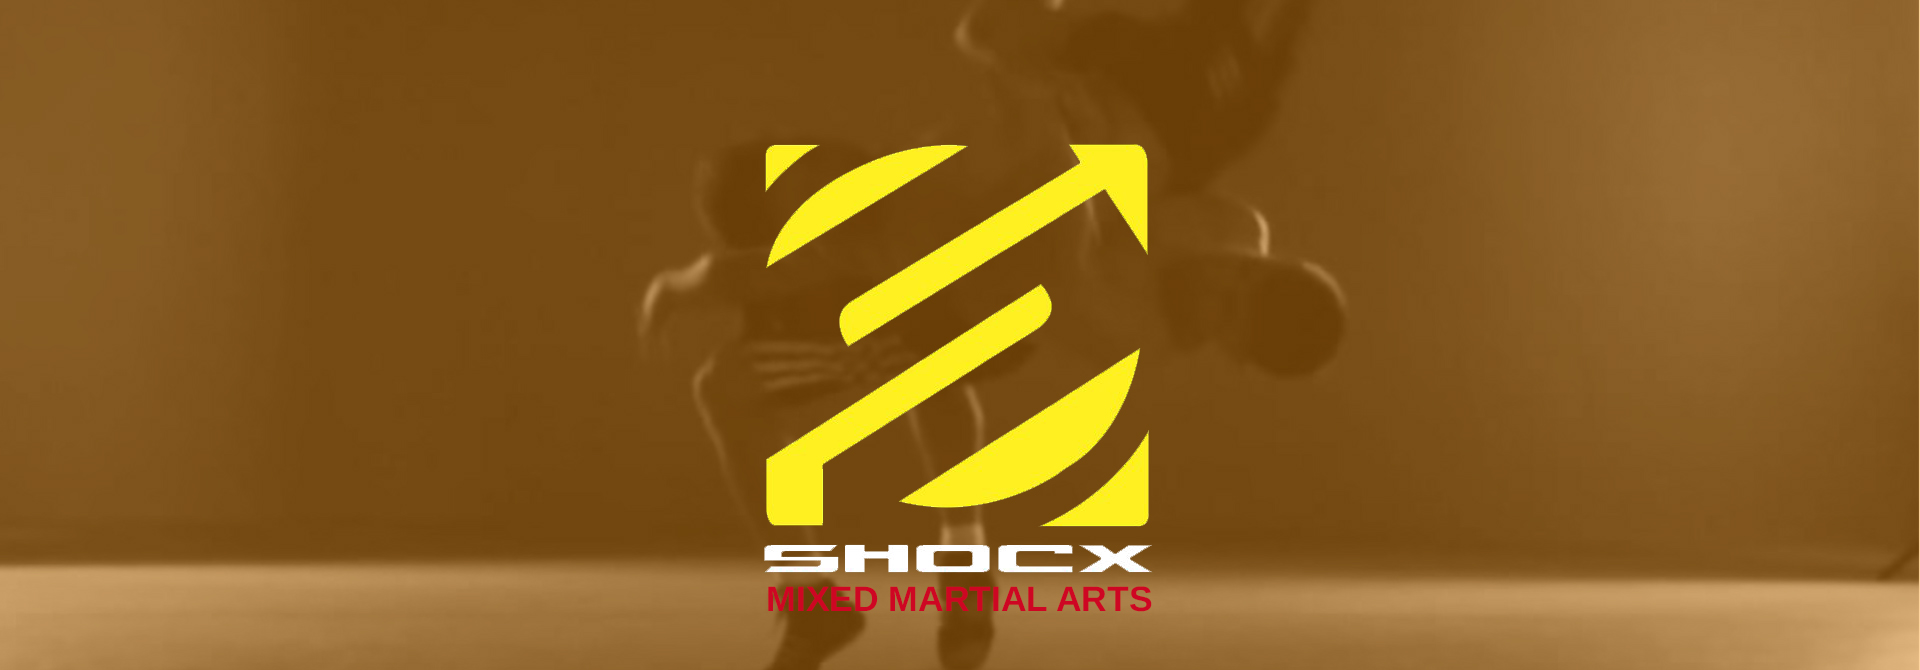 cours de Cross training · Muaythaï · Jiu Jitsu · Salle de Boxe · Judo · Zumba · Fitness · Capoeira · arts martiaux pour enfants à Bruxelles